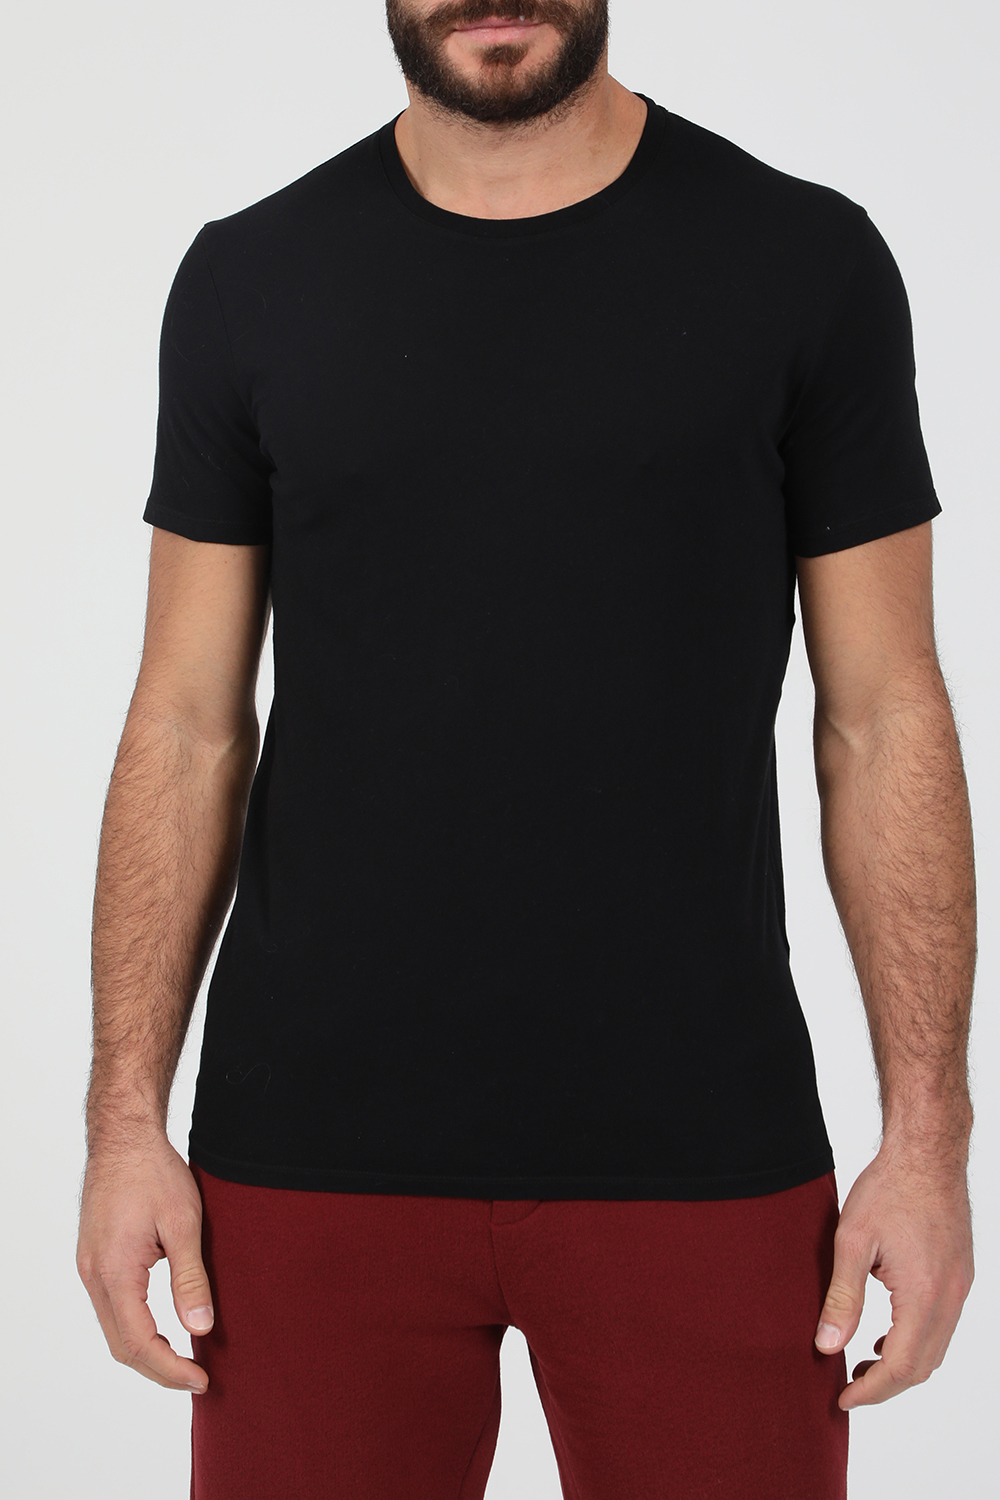 Ανδρικά/Ρούχα/Μπλούζες/Κοντομάνικες AMERICAN VINTAGE - Ανδρική κοντομάνικη μπλούζα AMERICAN VINTAGEμαύρη